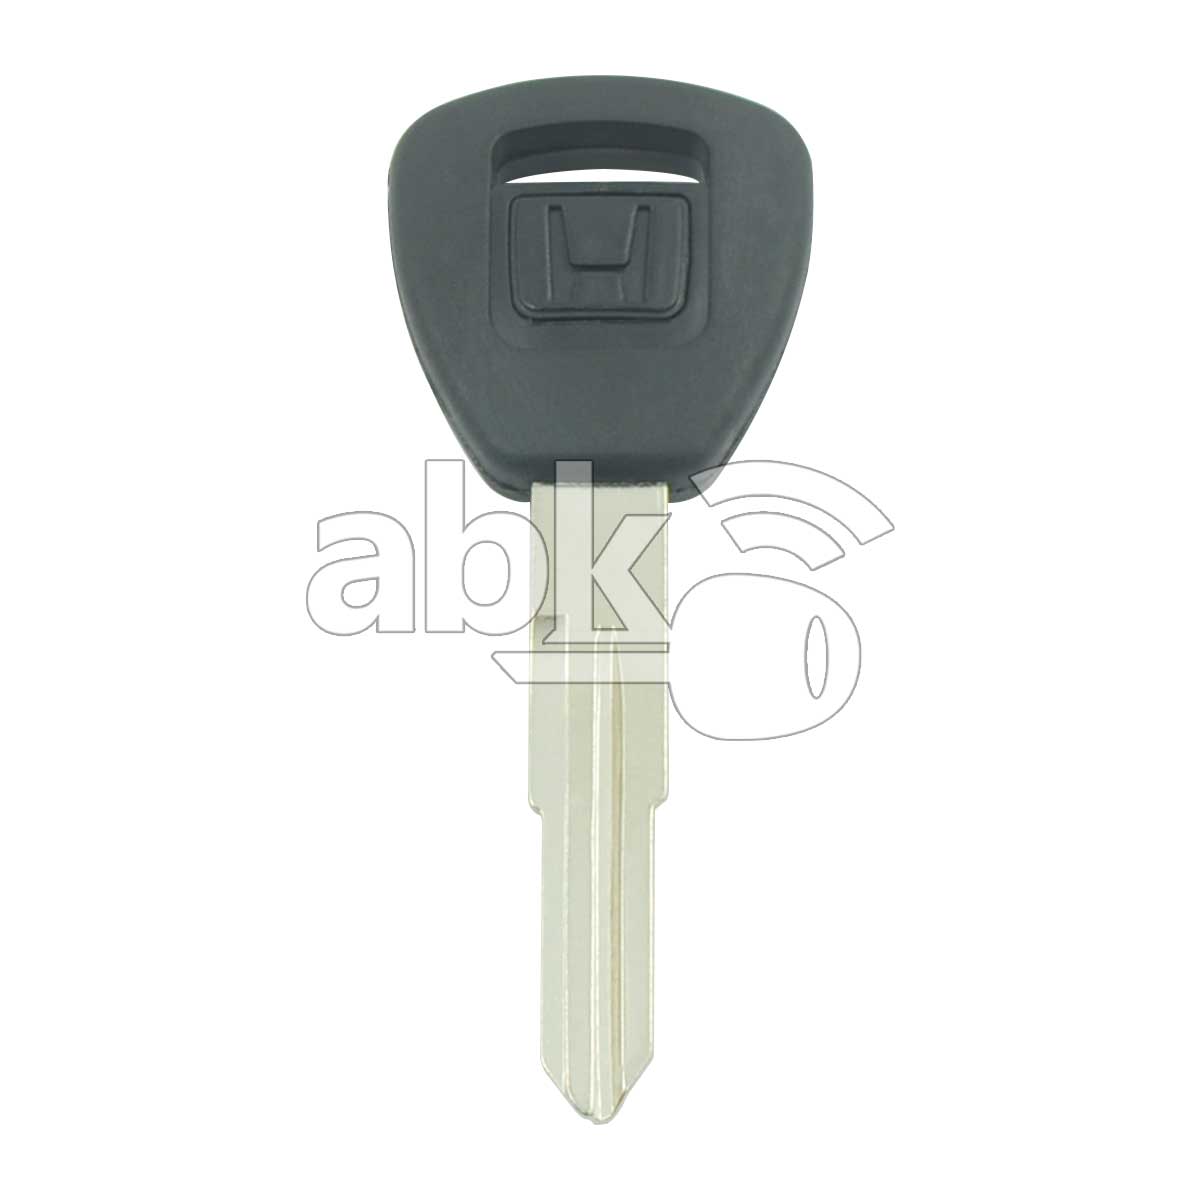 Honda Chip Less Key HON58R - ABK-868 - ABKEYS.COM